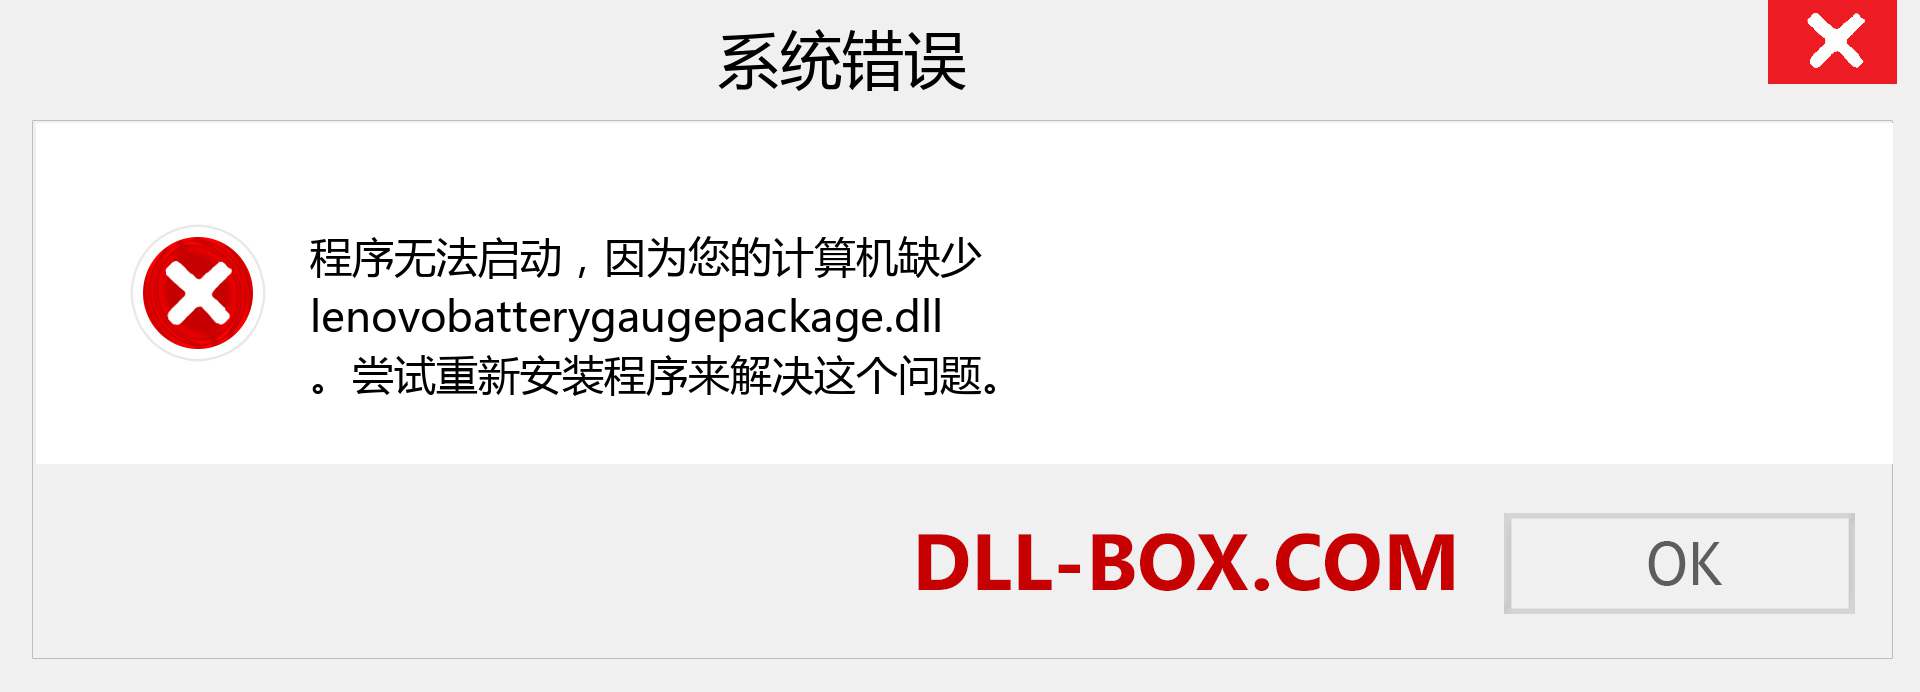 lenovobatterygaugepackage.dll 文件丢失？。 适用于 Windows 7、8、10 的下载 - 修复 Windows、照片、图像上的 lenovobatterygaugepackage dll 丢失错误